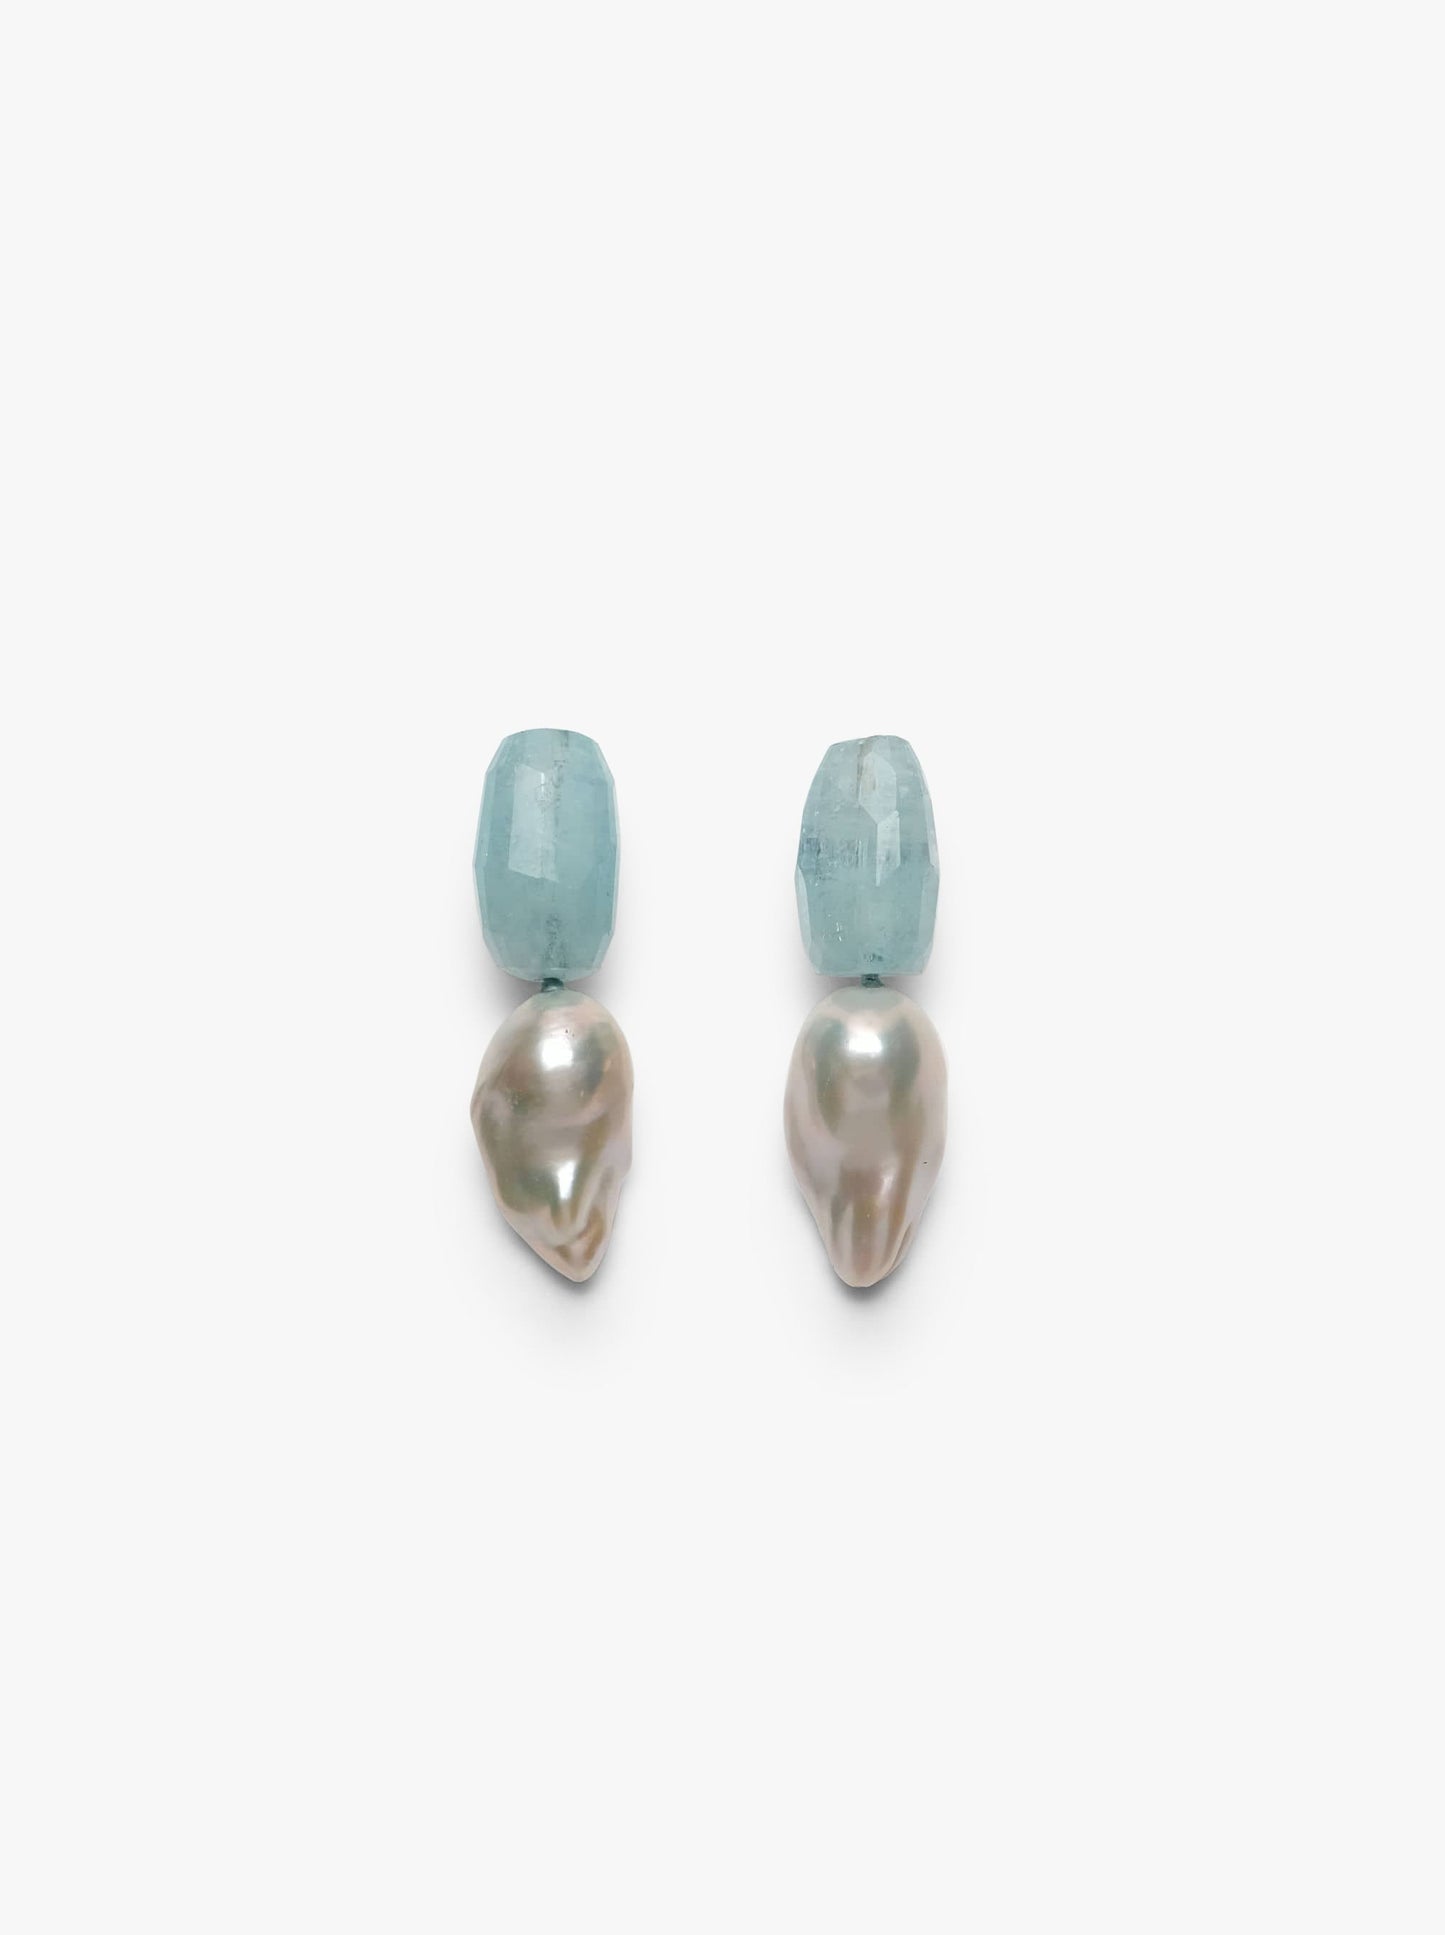 Stud earrings: aquamarine, pearl